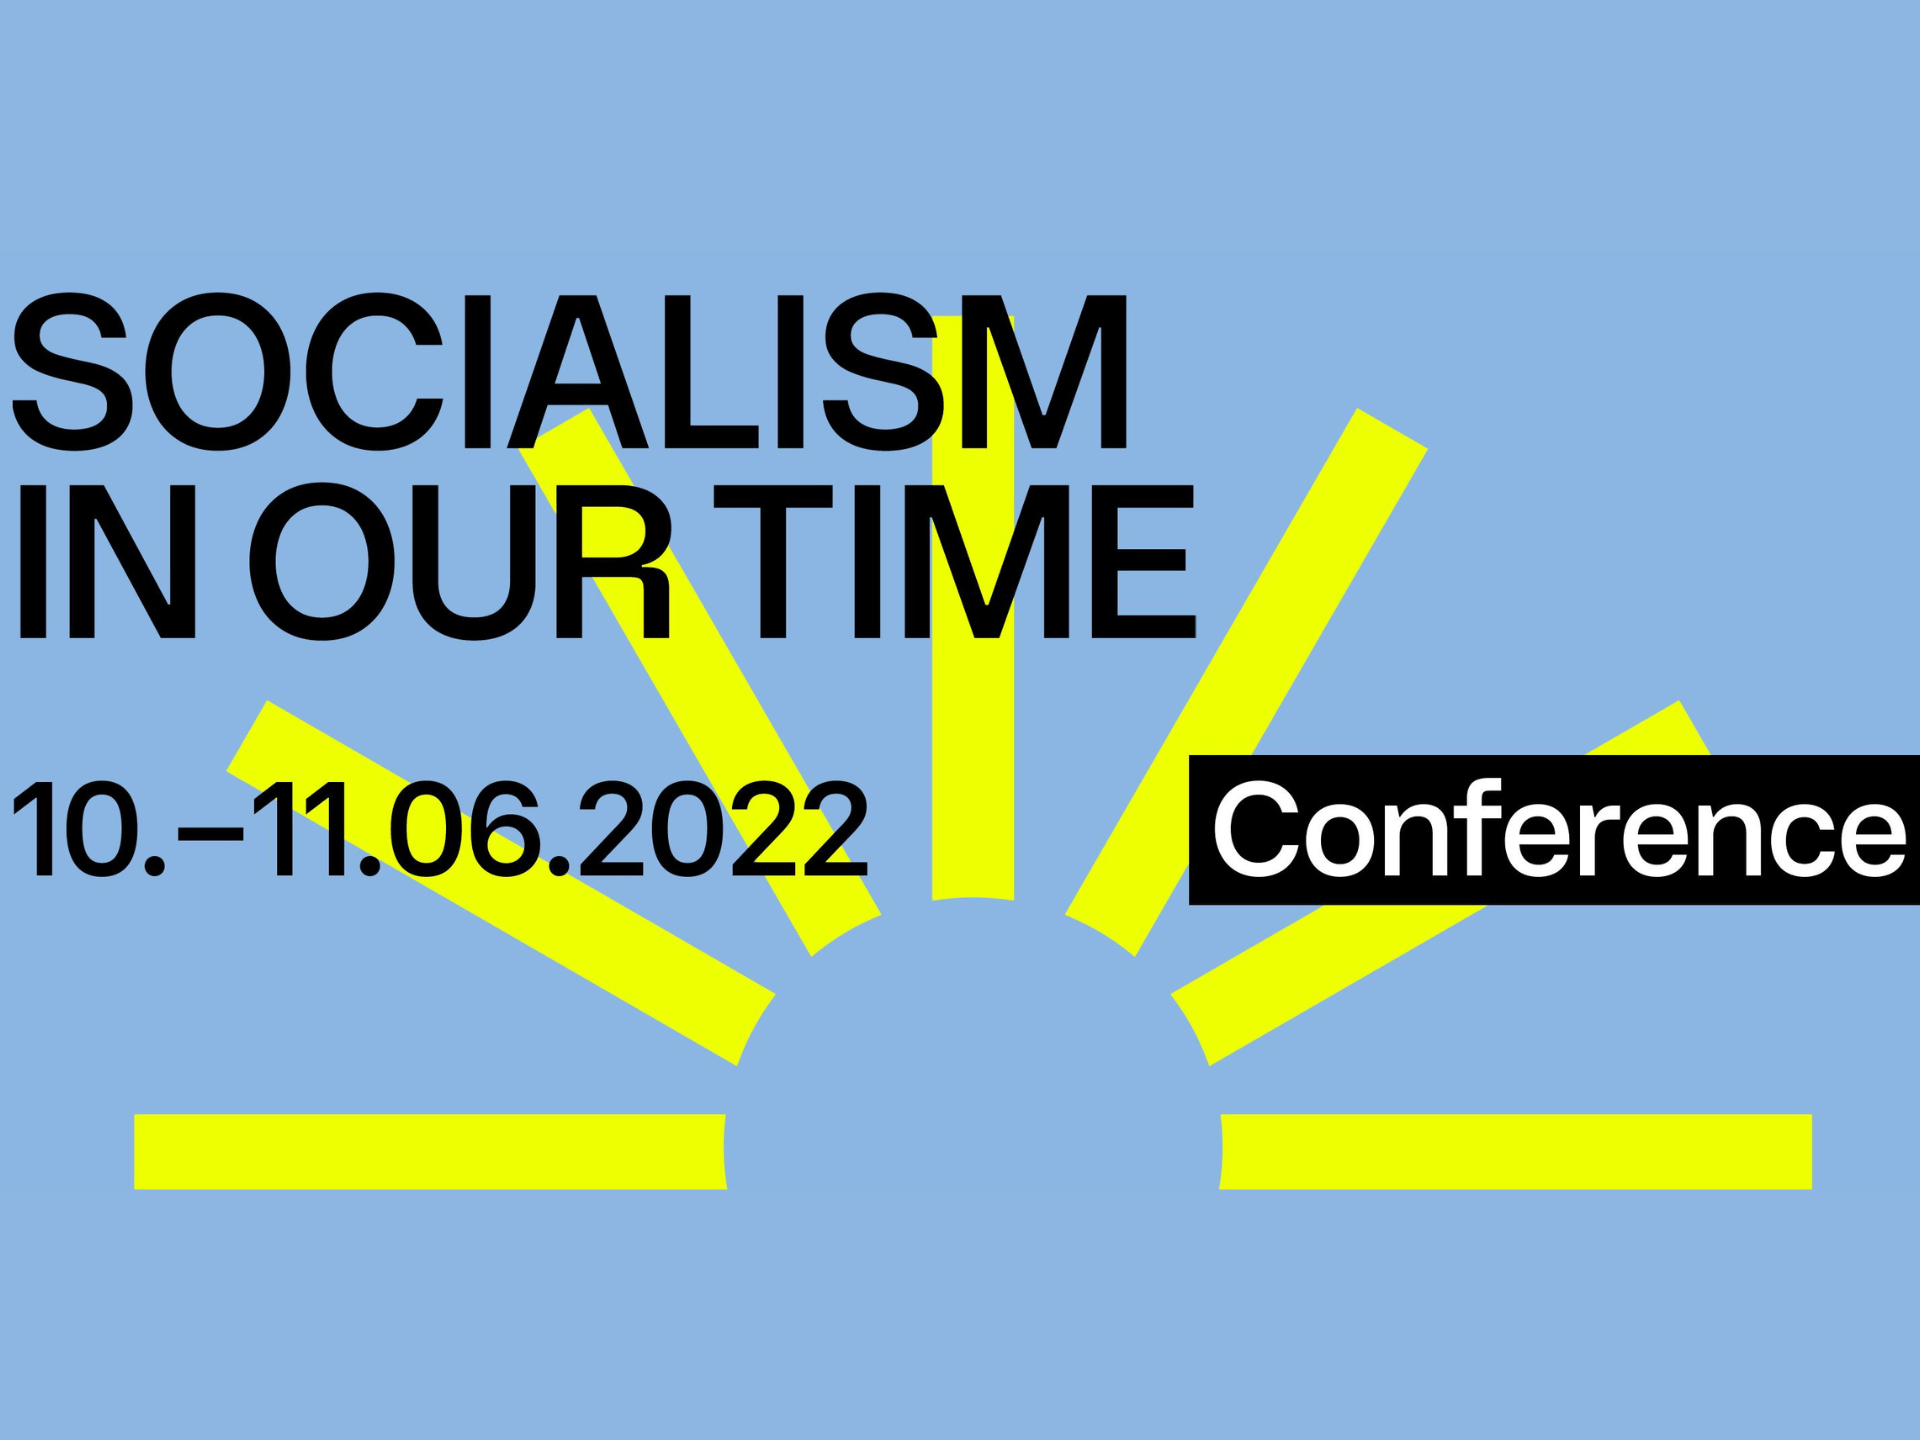 El socialismo en nuestro tiempo - Conferencia jacobina